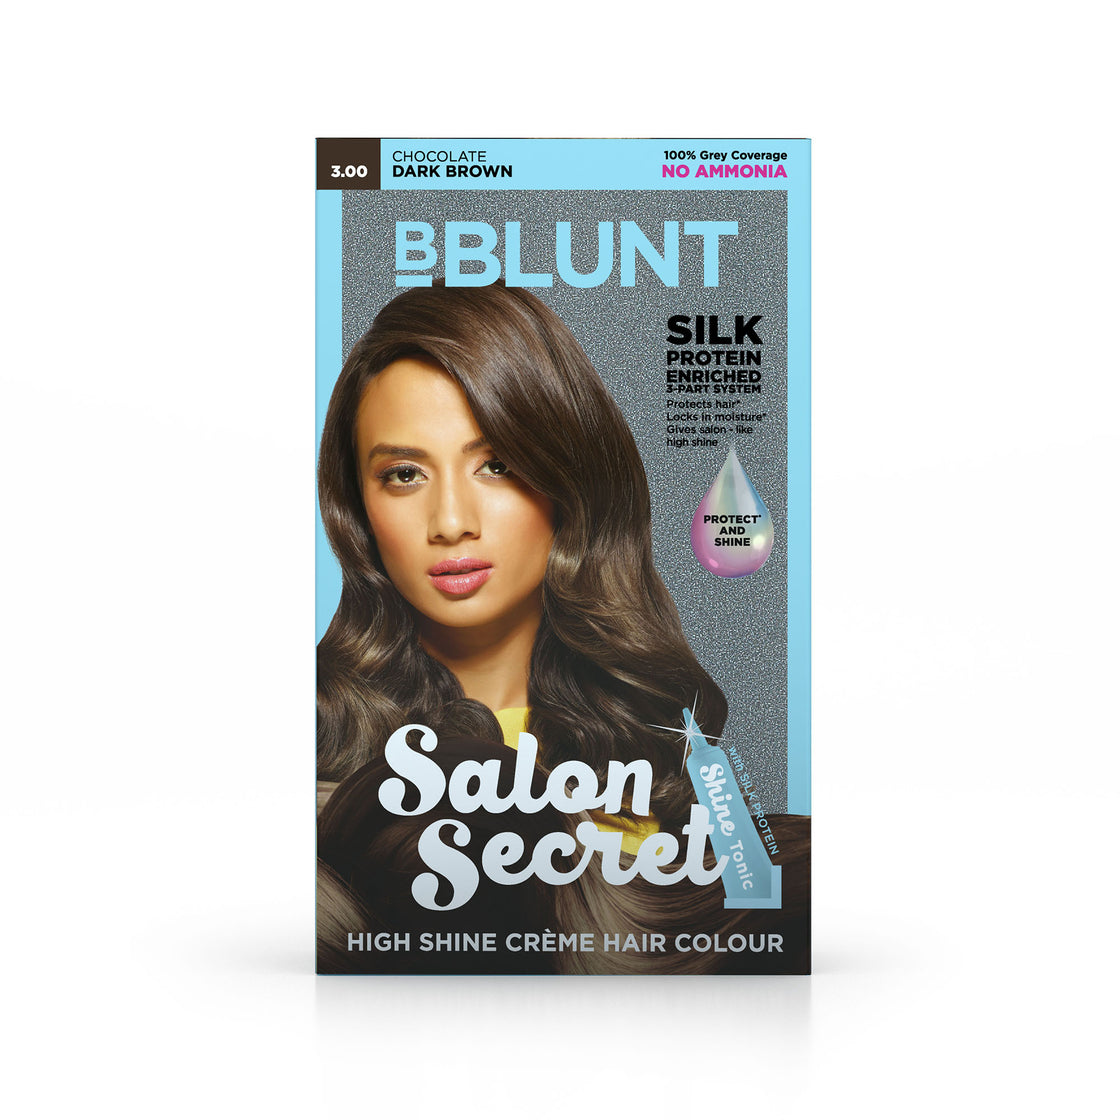 Bblunt Salon Secret High Shine Creme Hair Colour Chocolate Dark Brown 3, No Ammonia (100Gm+8Ml)